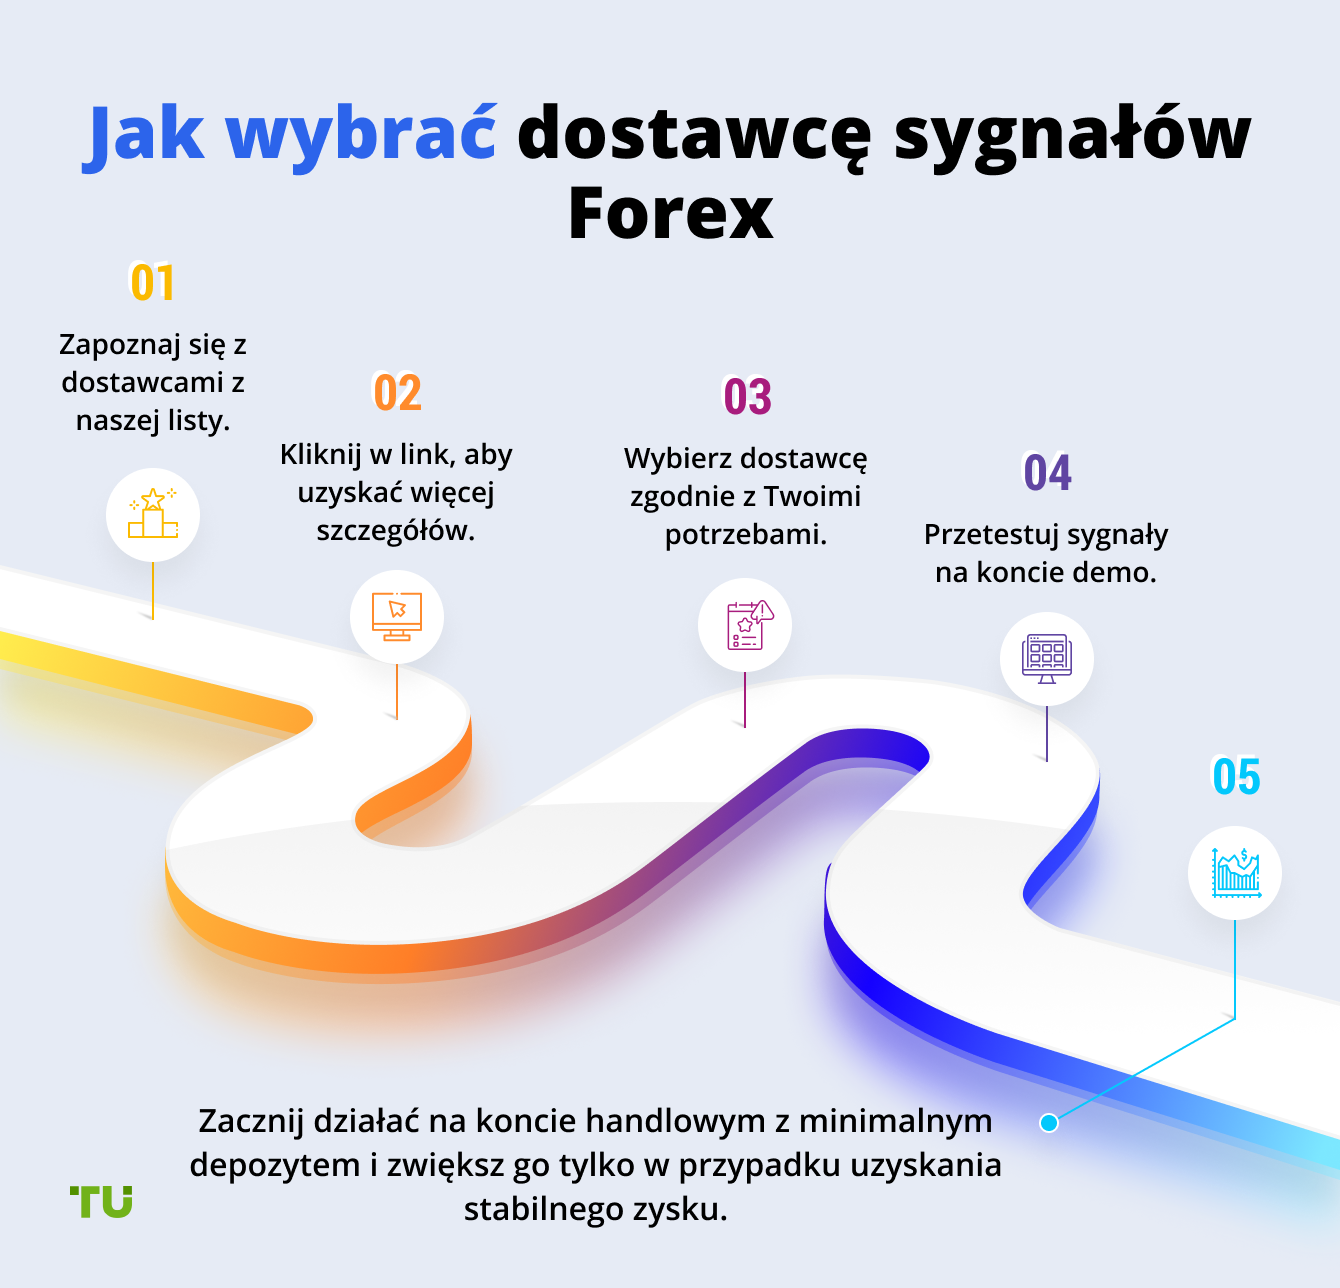 Jak wybrać dostawcę sygnałów Forex